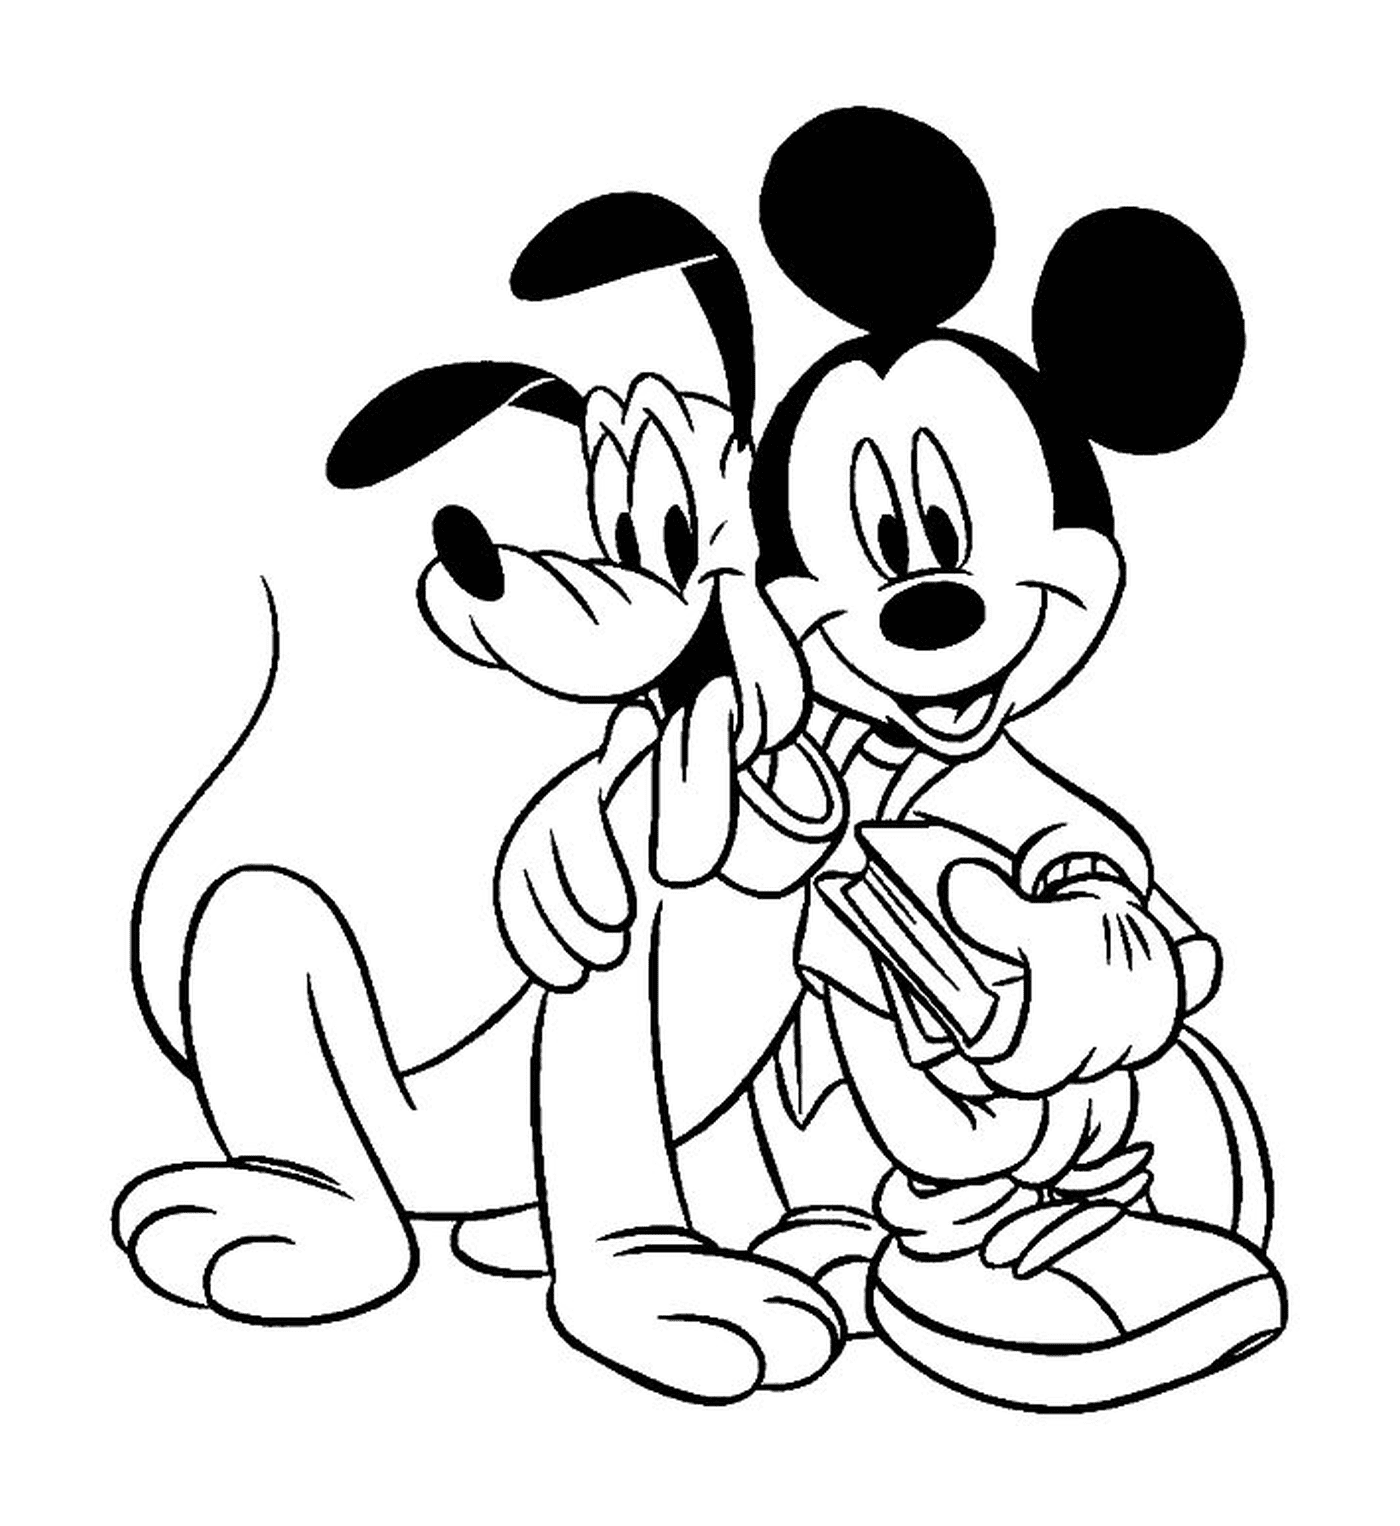  Mickey e seu cão Pluto 